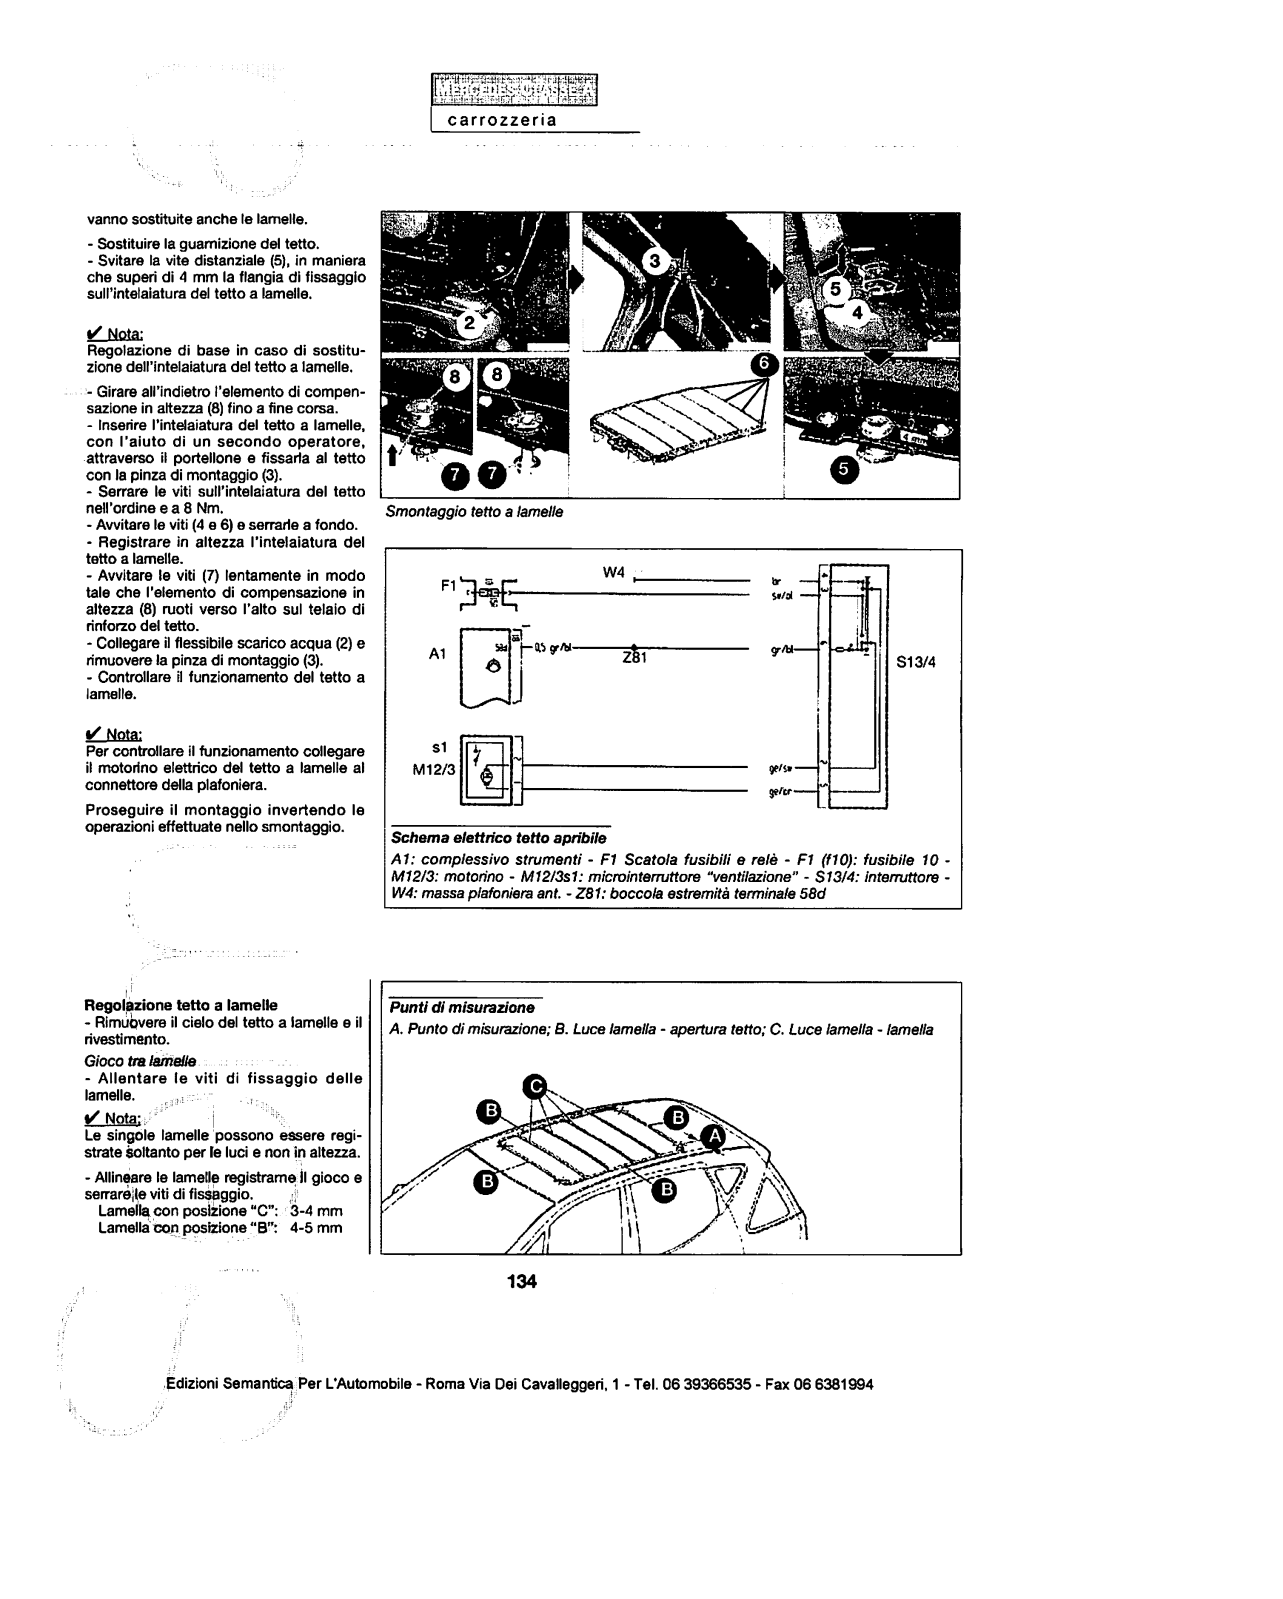 w168 - (W168): Manual técnico - tudo sobre - 1997 a 2004 - italiano Xc1zfb